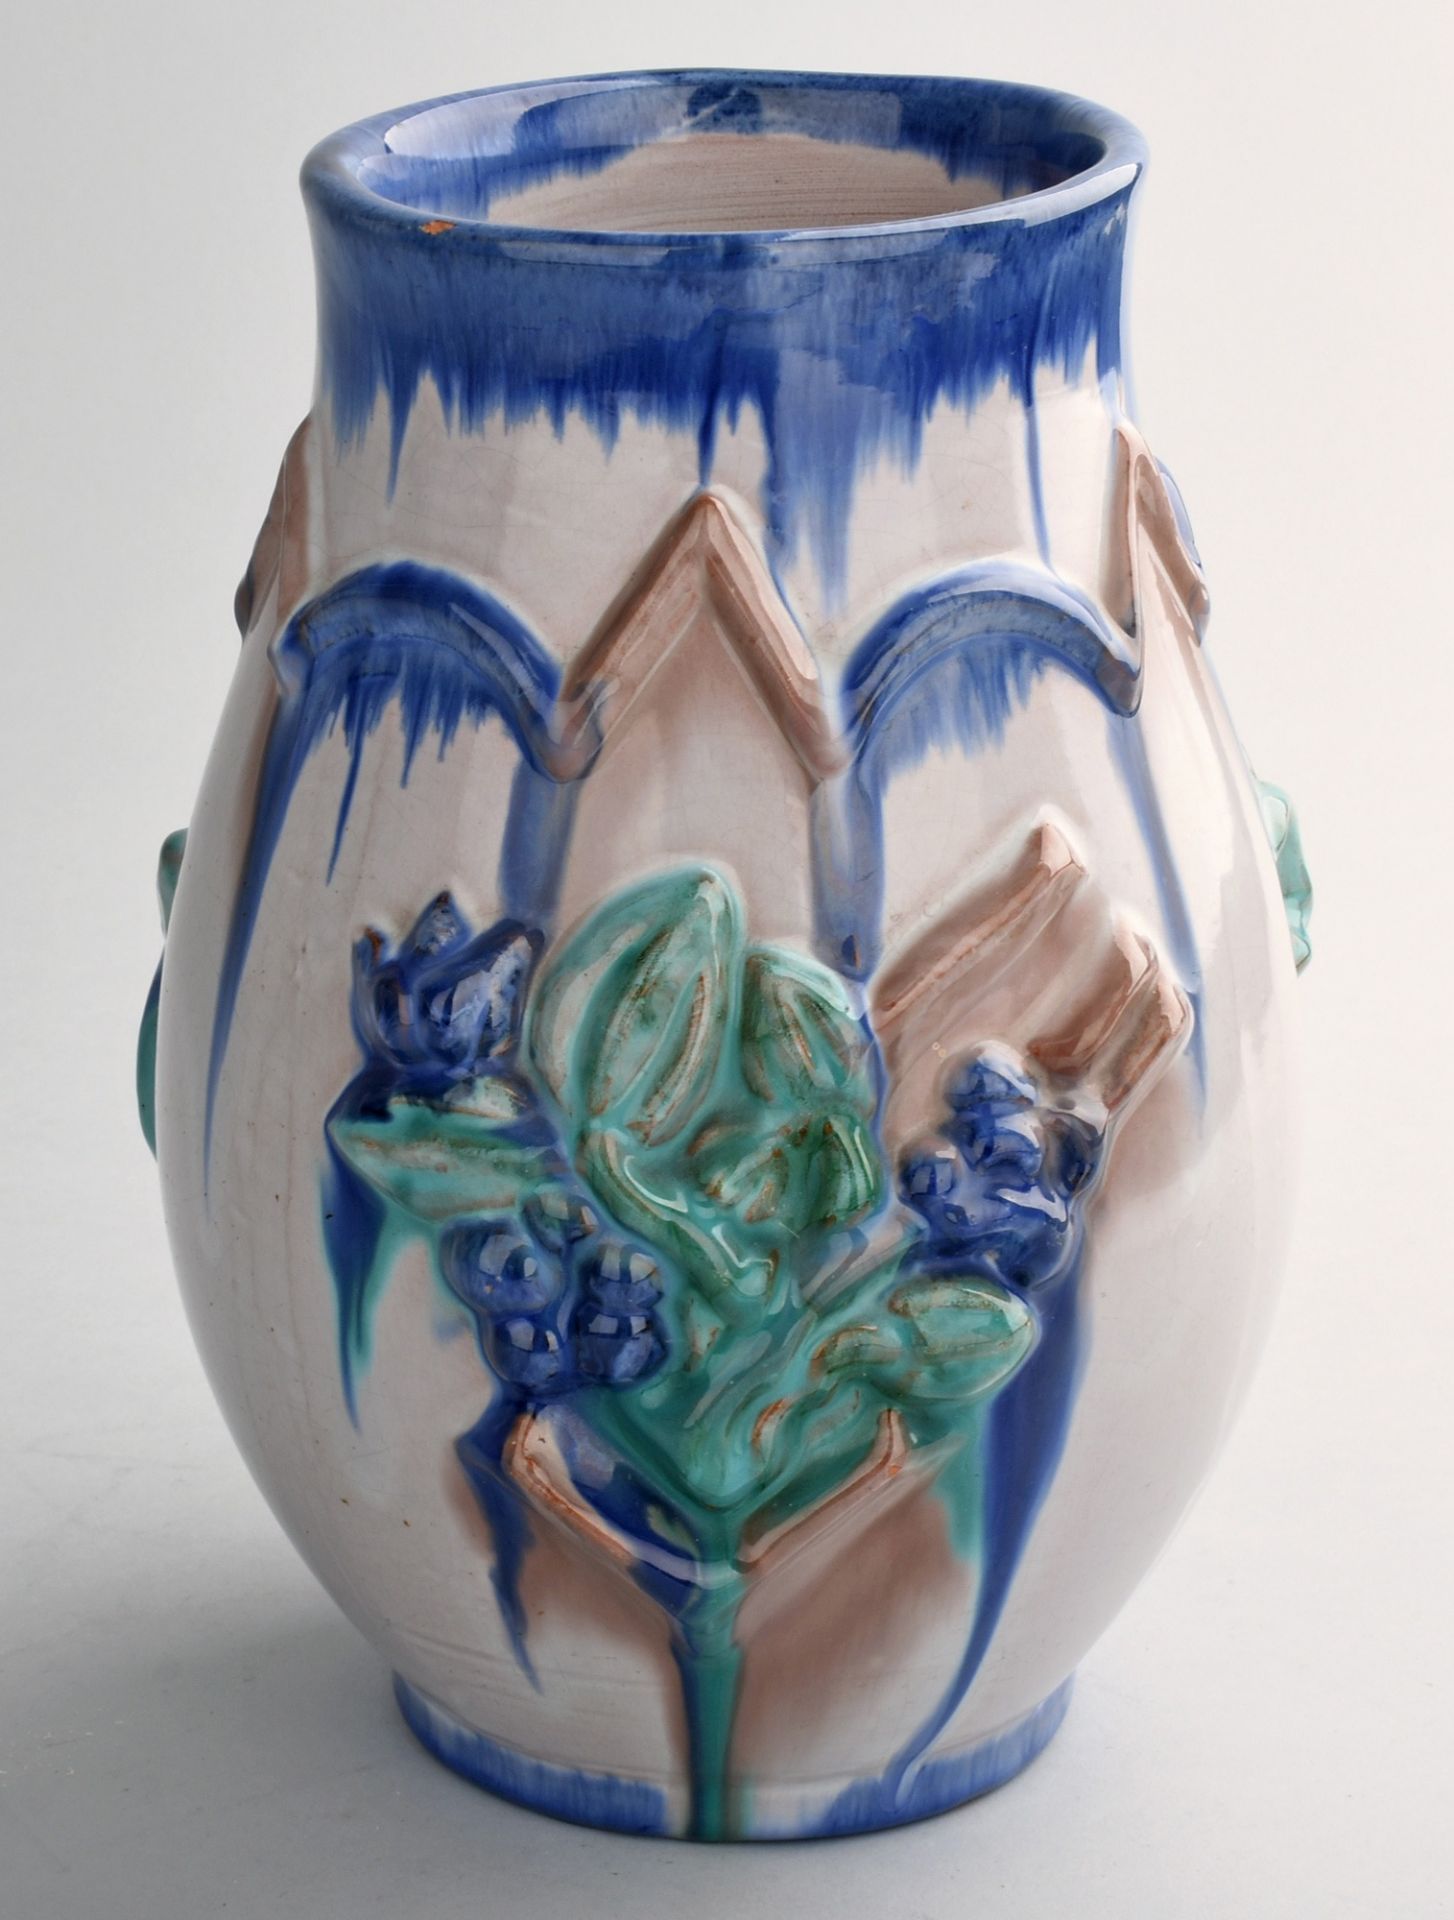 Vase gemarkt "Made in Austria", ziegelroter Scherben, bauchige Wandung mit leicht ausschwingendem - Bild 2 aus 3